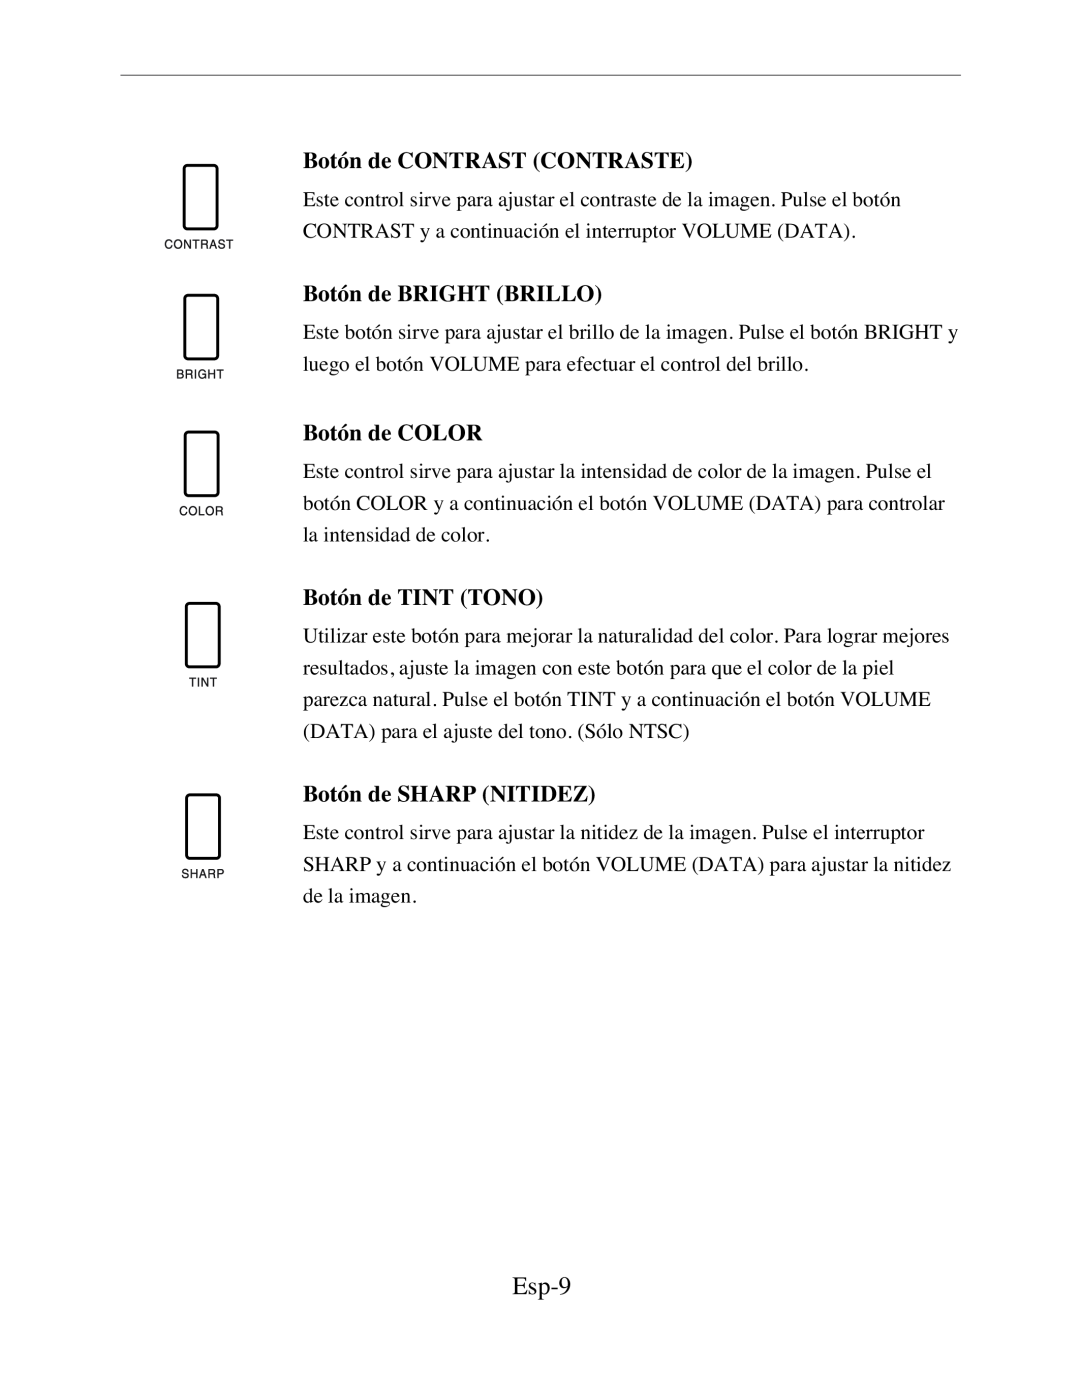 Samsung SMC-152FPV manual Esp-9, Botón de CONTRAST CONTRASTE, Botón de BRIGHT BRILLO, Botón de COLOR, Botón de TINT TONO 